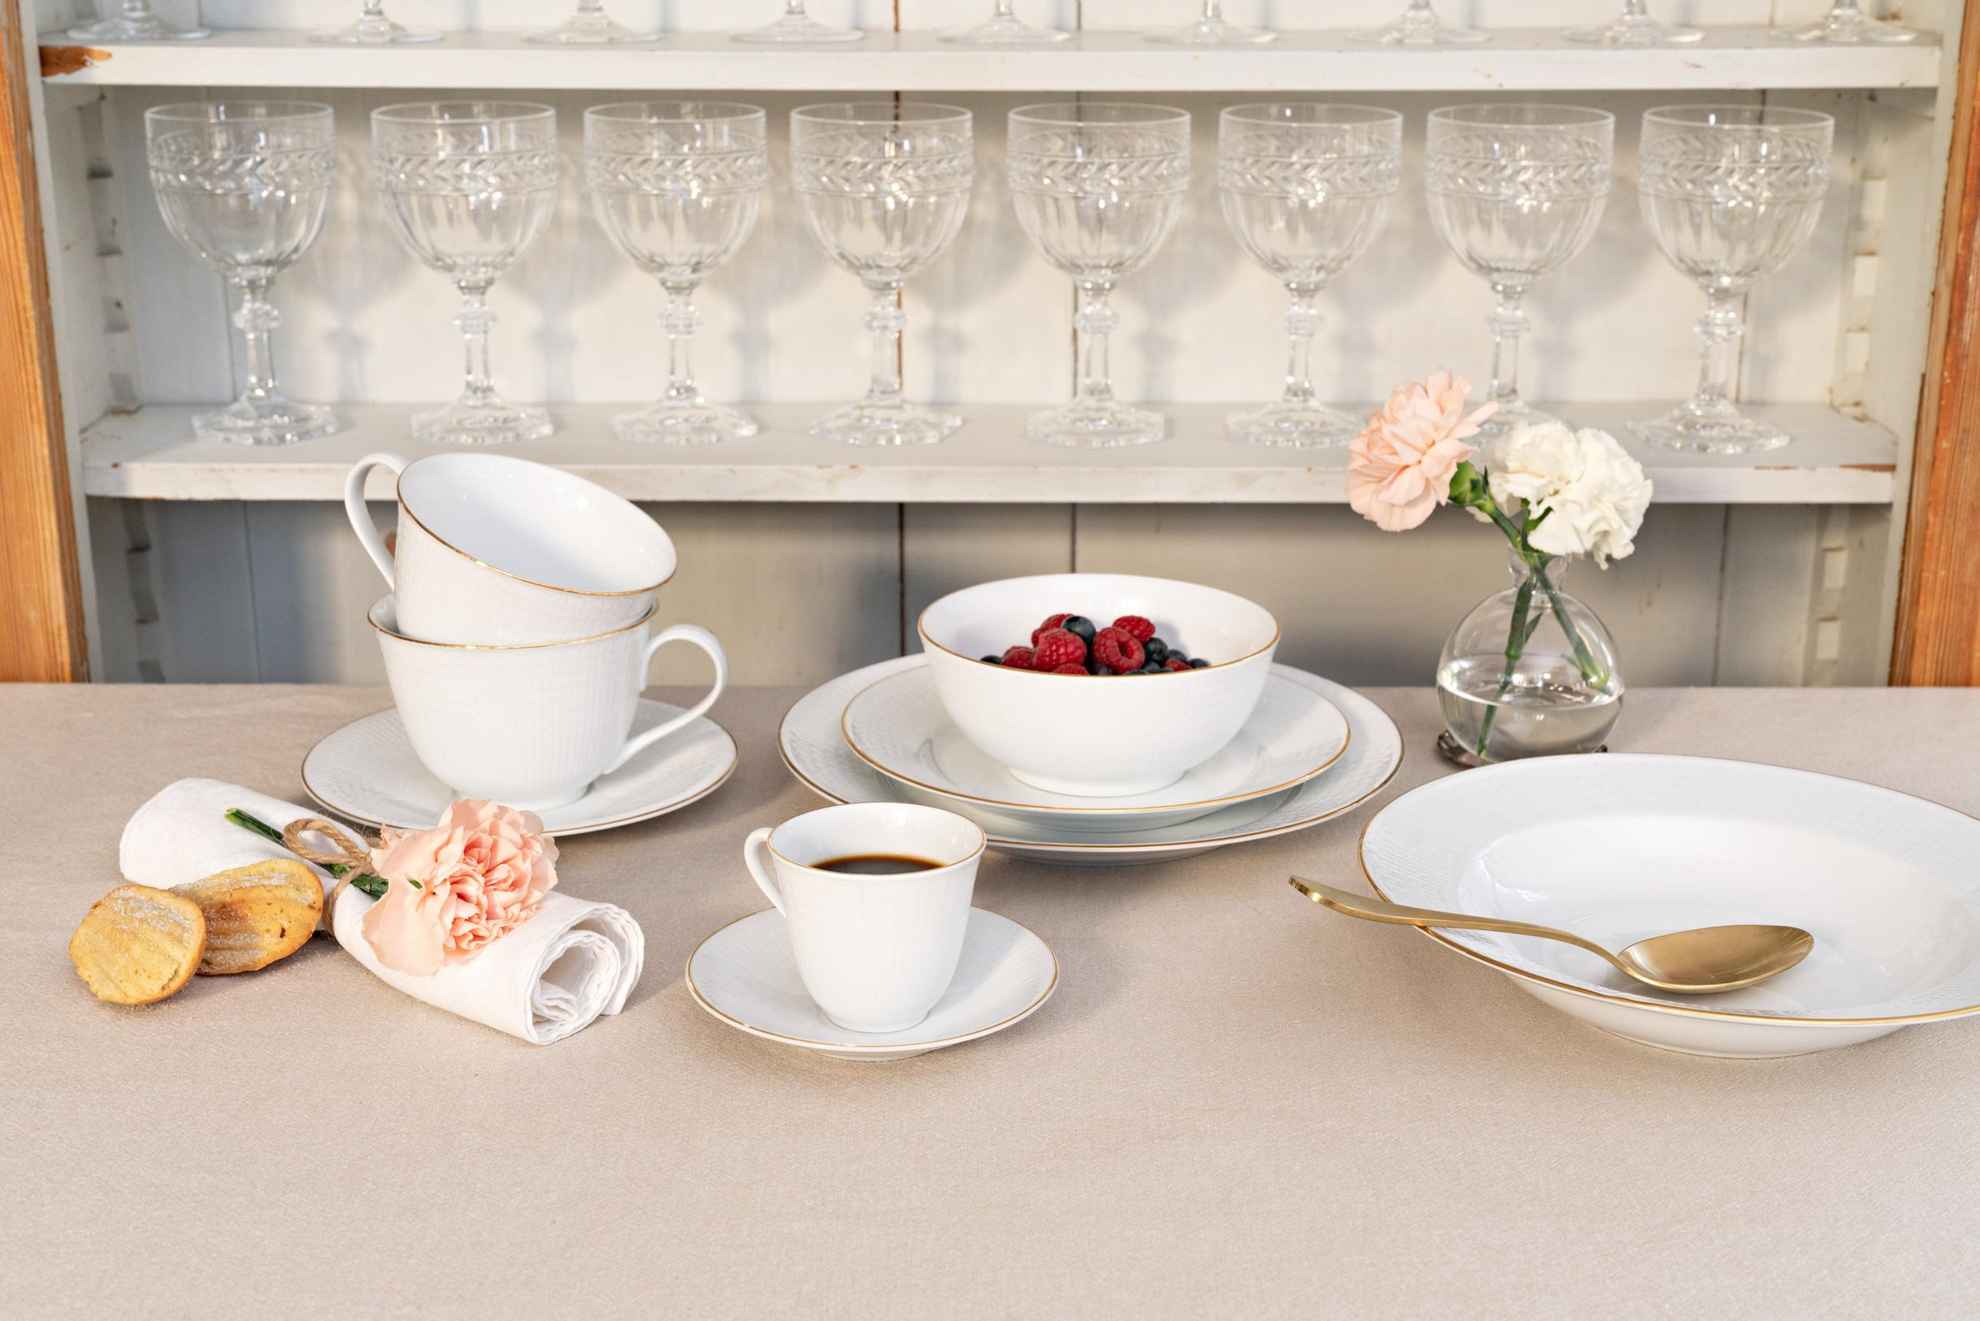 Un service de table appelé "Swedish Grace" est posé sur une table. Il y a des assiettes de différentes tailles, un bol rempli des baies, deux tasses à thé et une tasse de café. Derrière il y a une étagère rempli avec plusieurs verres à vin.